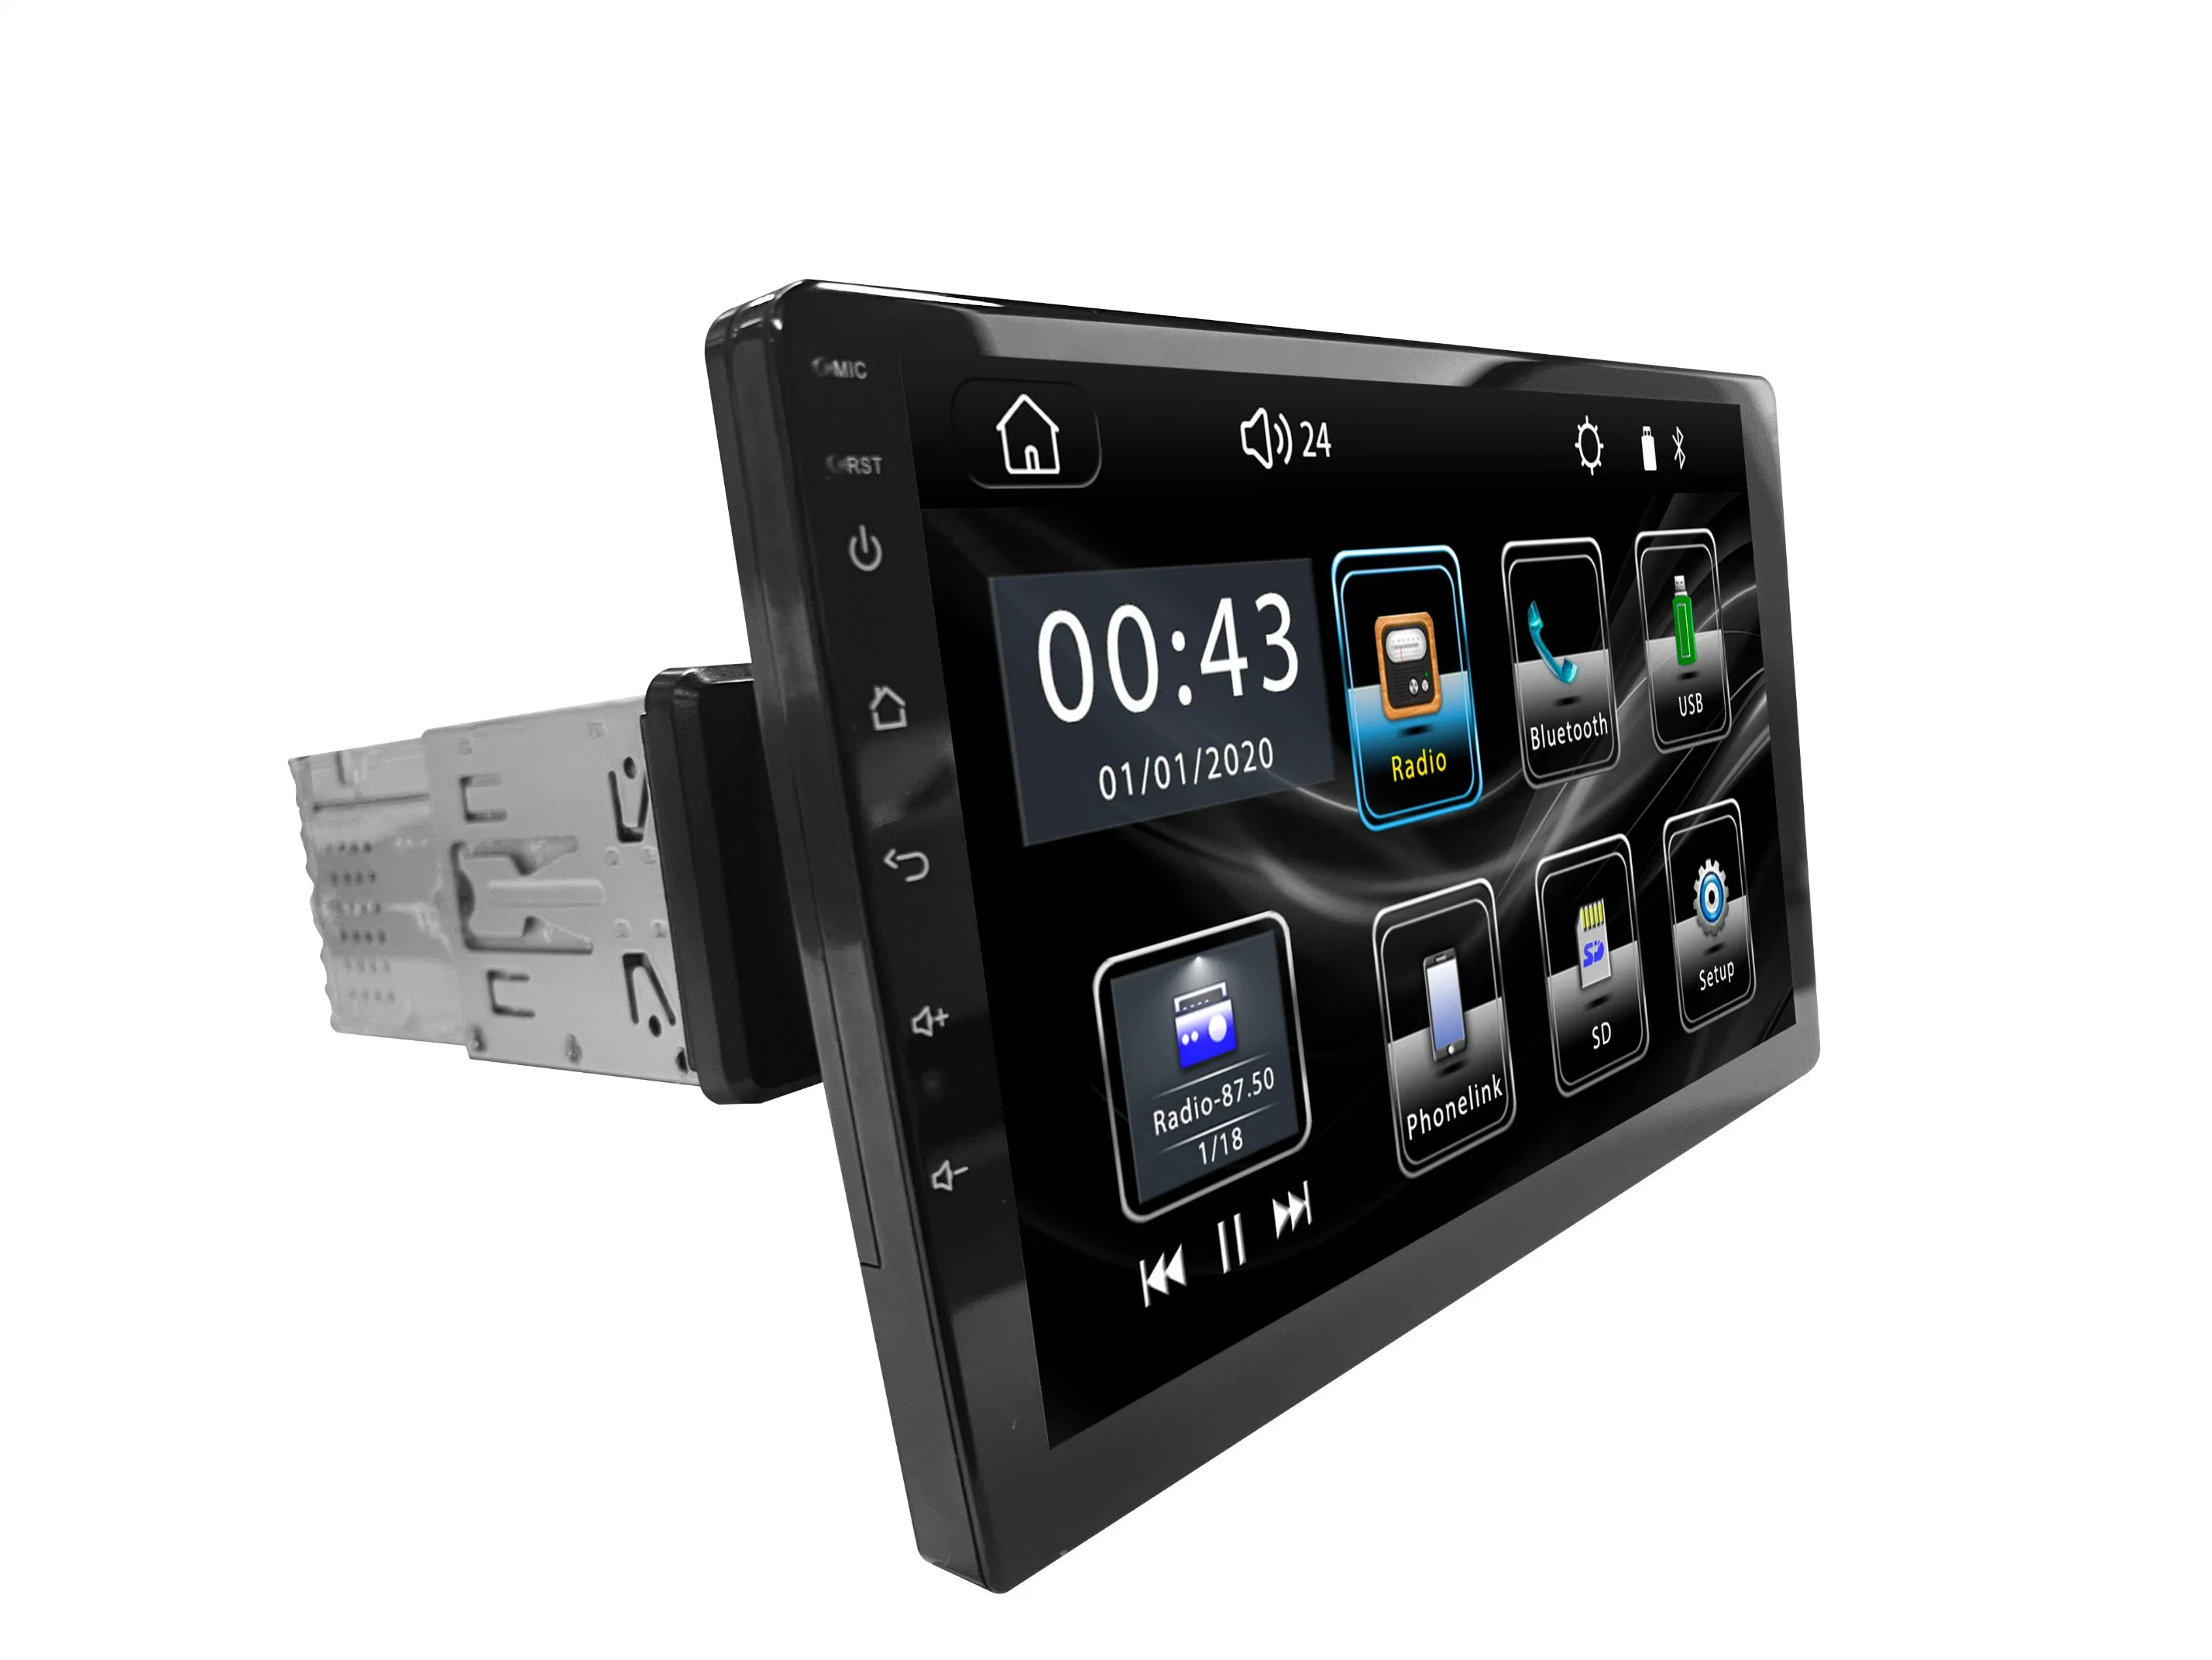 راديو سيارة عام 1DIN قابل للدوران بنظام 360 راديو استريو DVD شاشة سيارة Android الدوارة قياس 10.1 بوصة لنظام الملاحة من المشغل بنظام تحديد المواقع العالمي (GPS) مشغل الوسائط المتعددة